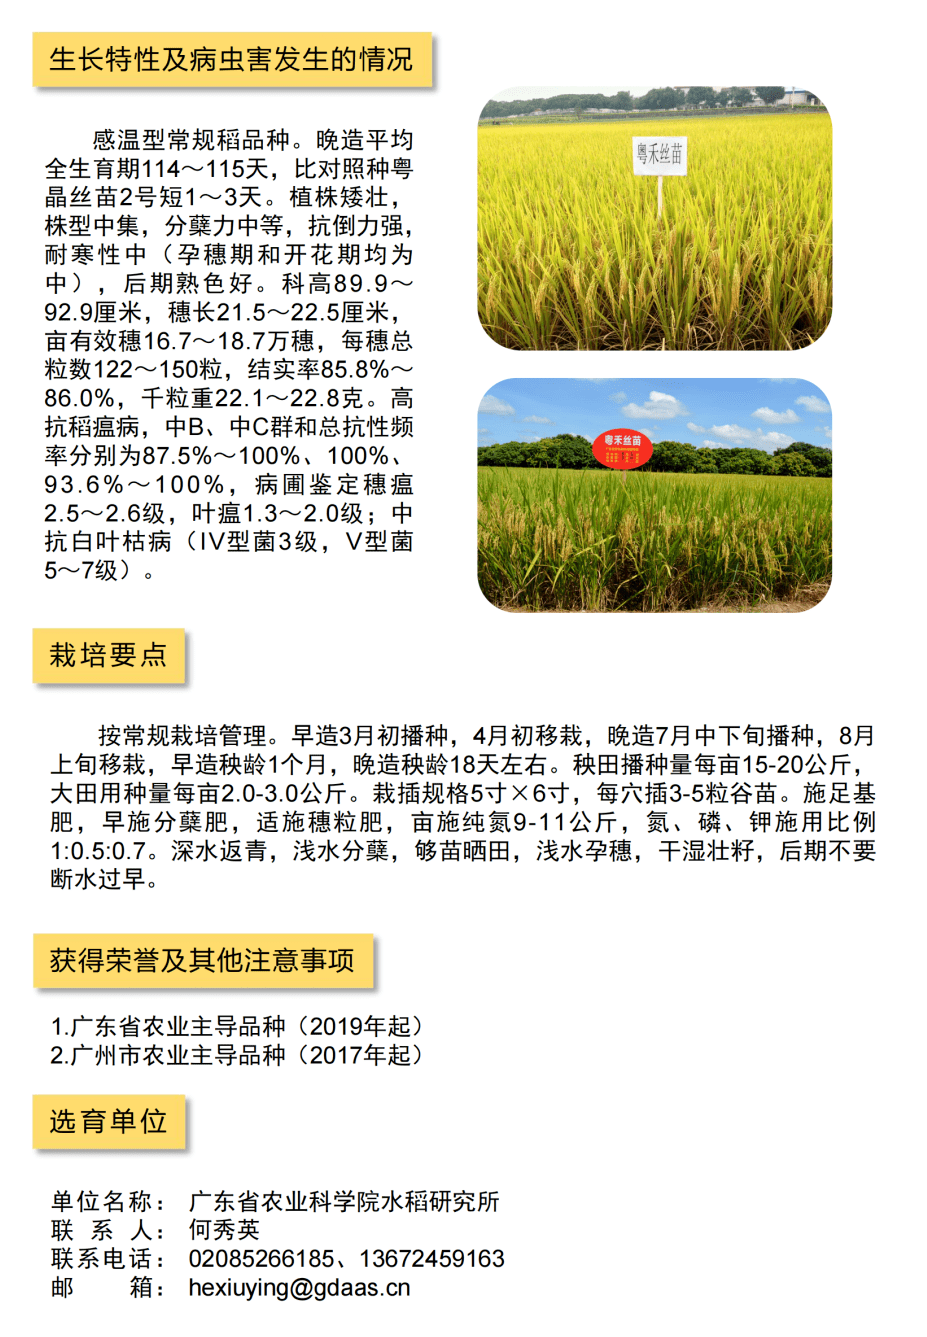 臻邦1624水稻品种介绍图片